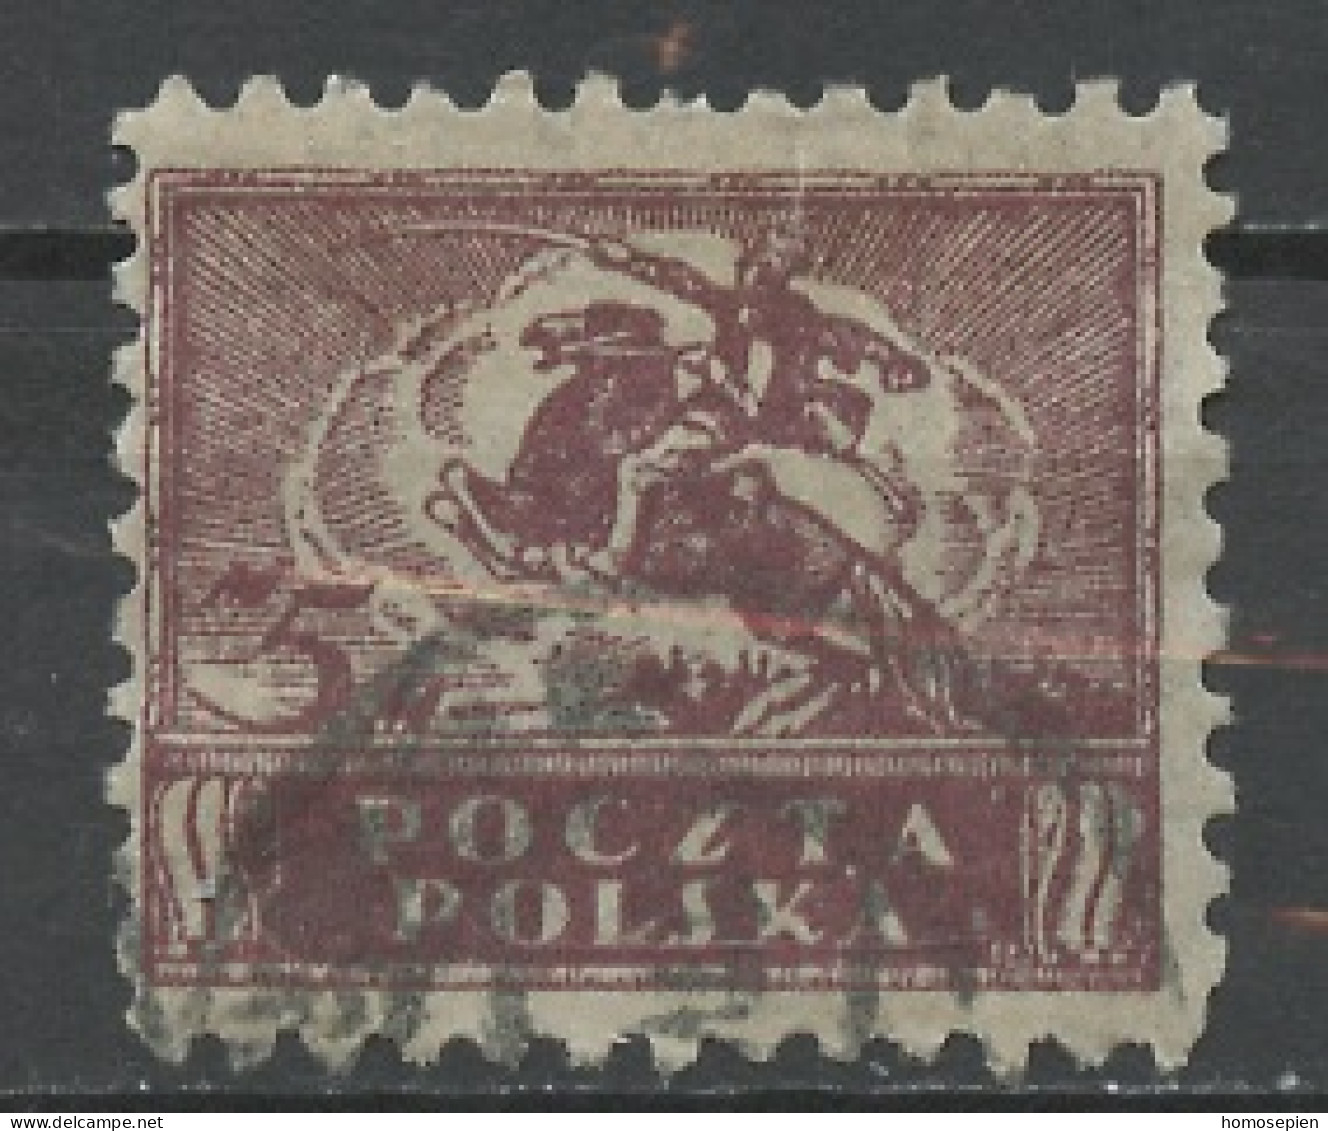 Pologne - Poland - Polen 1919 Y&T N°171 - Michel N°113 (o) - 5m Symbole De L'héroïsme - Used Stamps